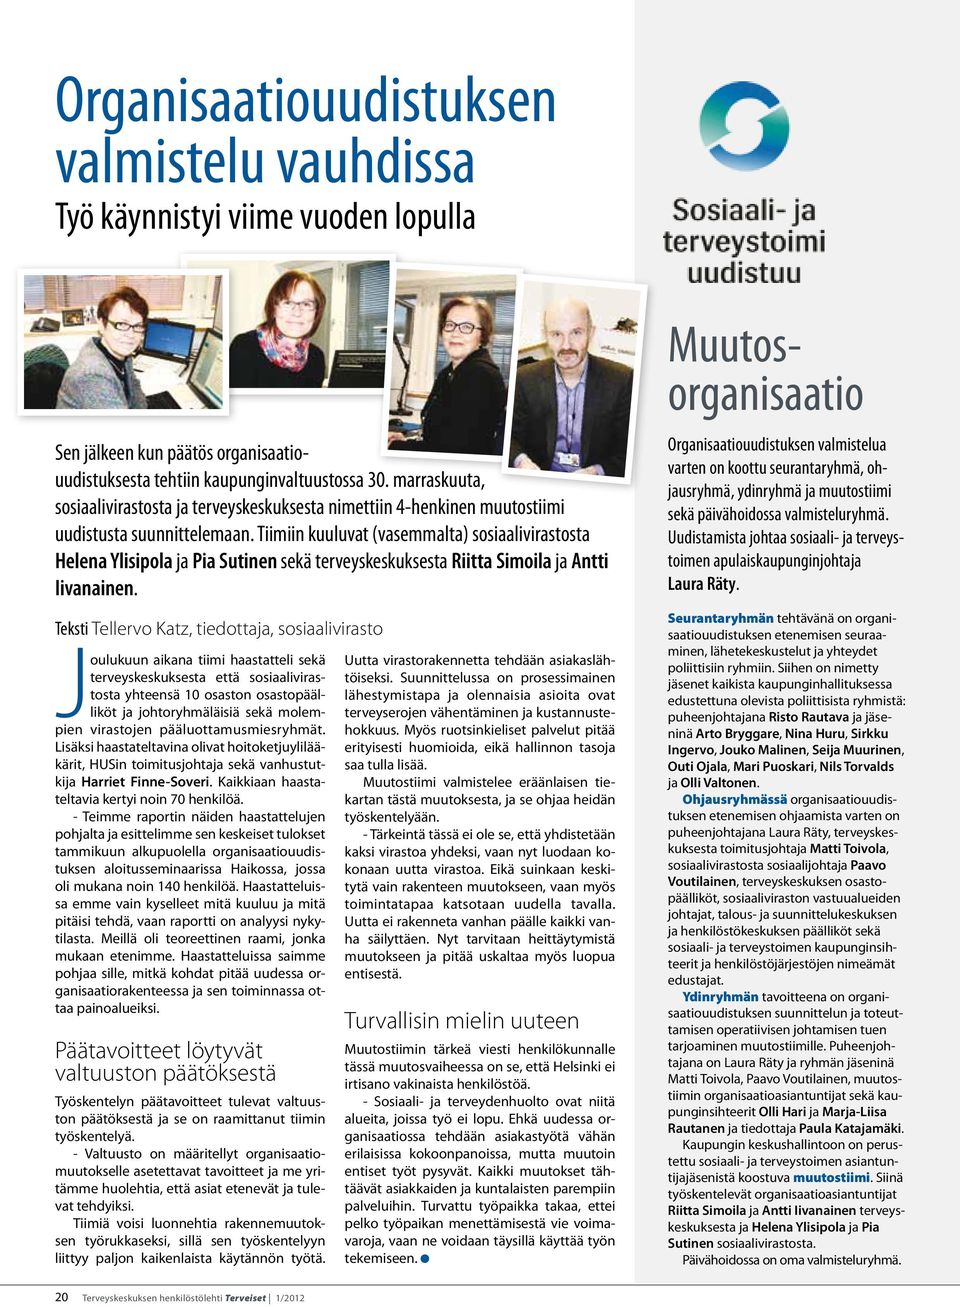 Tiimiin kuuluvat (vasemmalta) sosiaalivirastosta Helena Ylisipola ja Pia Sutinen sekä terveyskeskuksesta Riitta Simoila ja Antti Iivanainen.